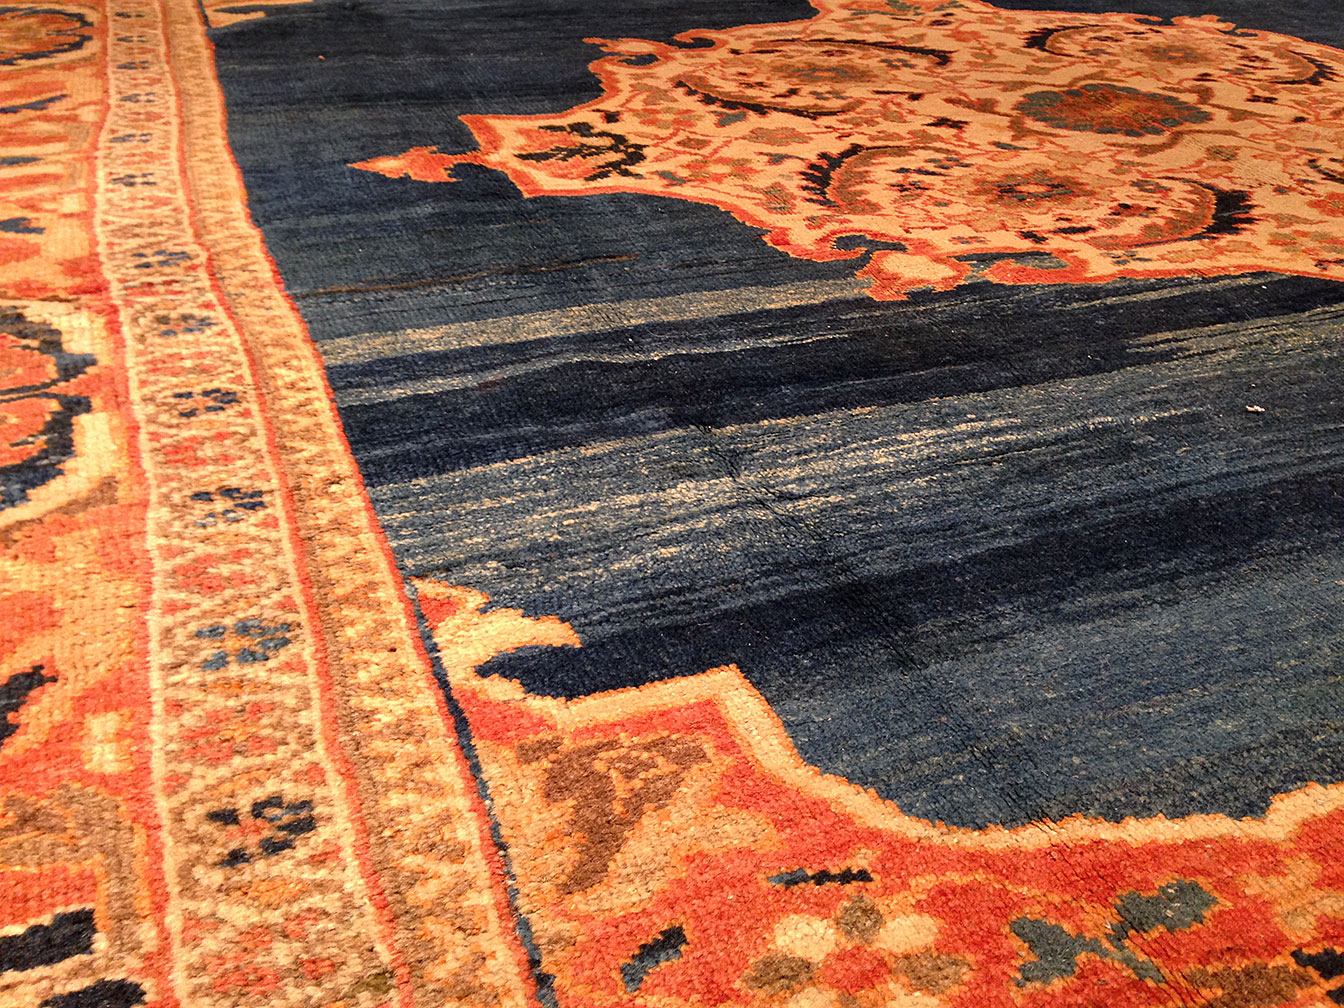 Antique sultan abad Carpet - # 9083